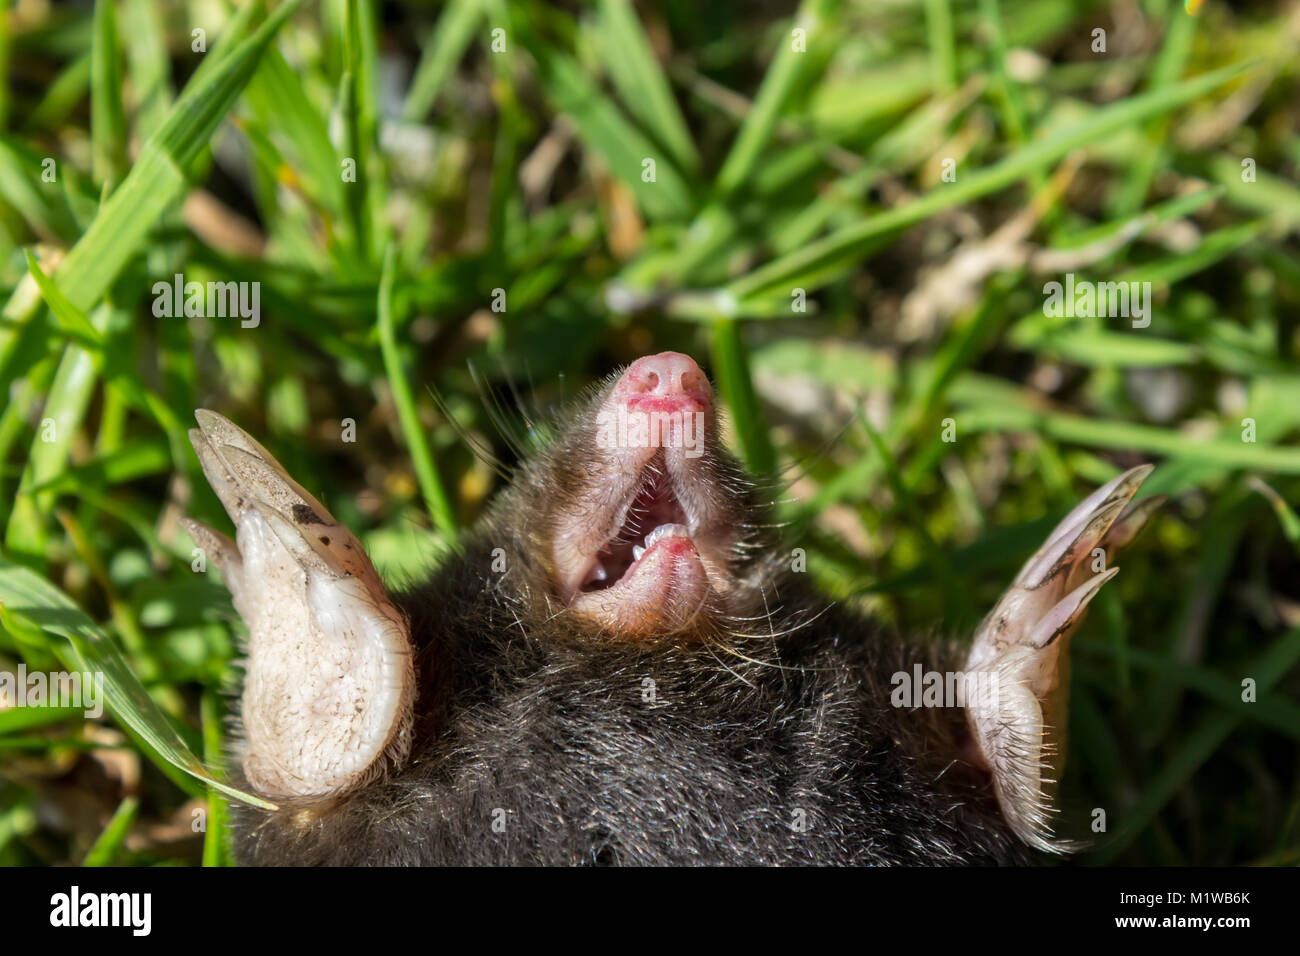 Mole morto giacente su erba, close-up; Vendsyssel, Danimarca Foto Stock